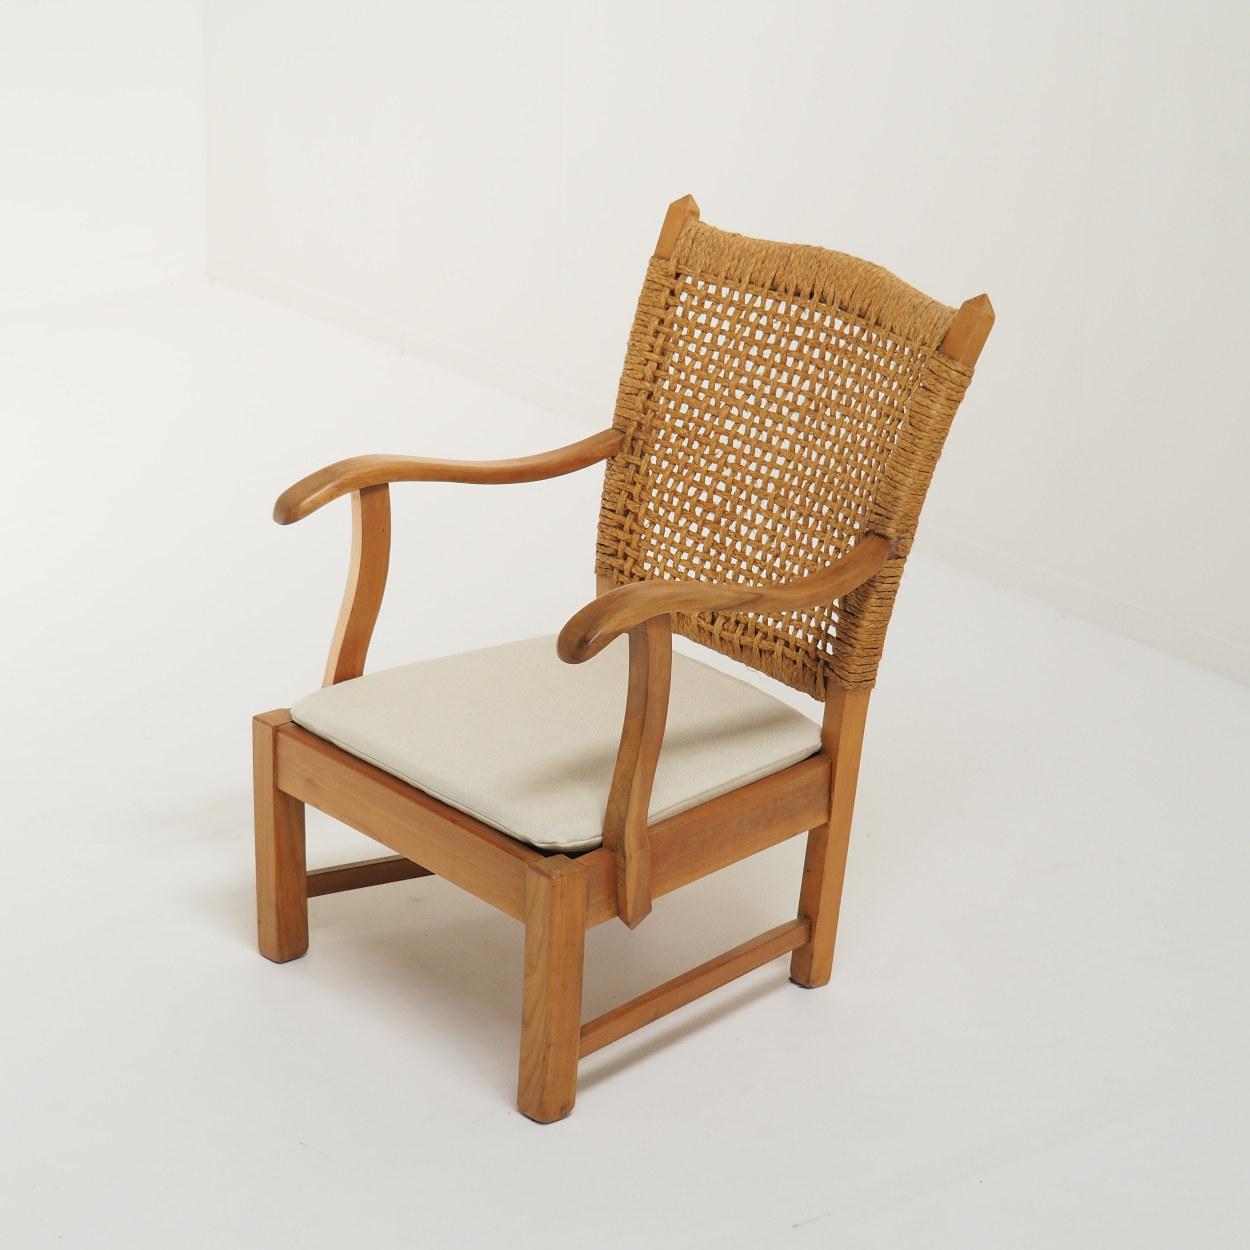 Bauhaus 1930s Modernist Rope Chair attr. to Bas Van Pelt, The Netherlands